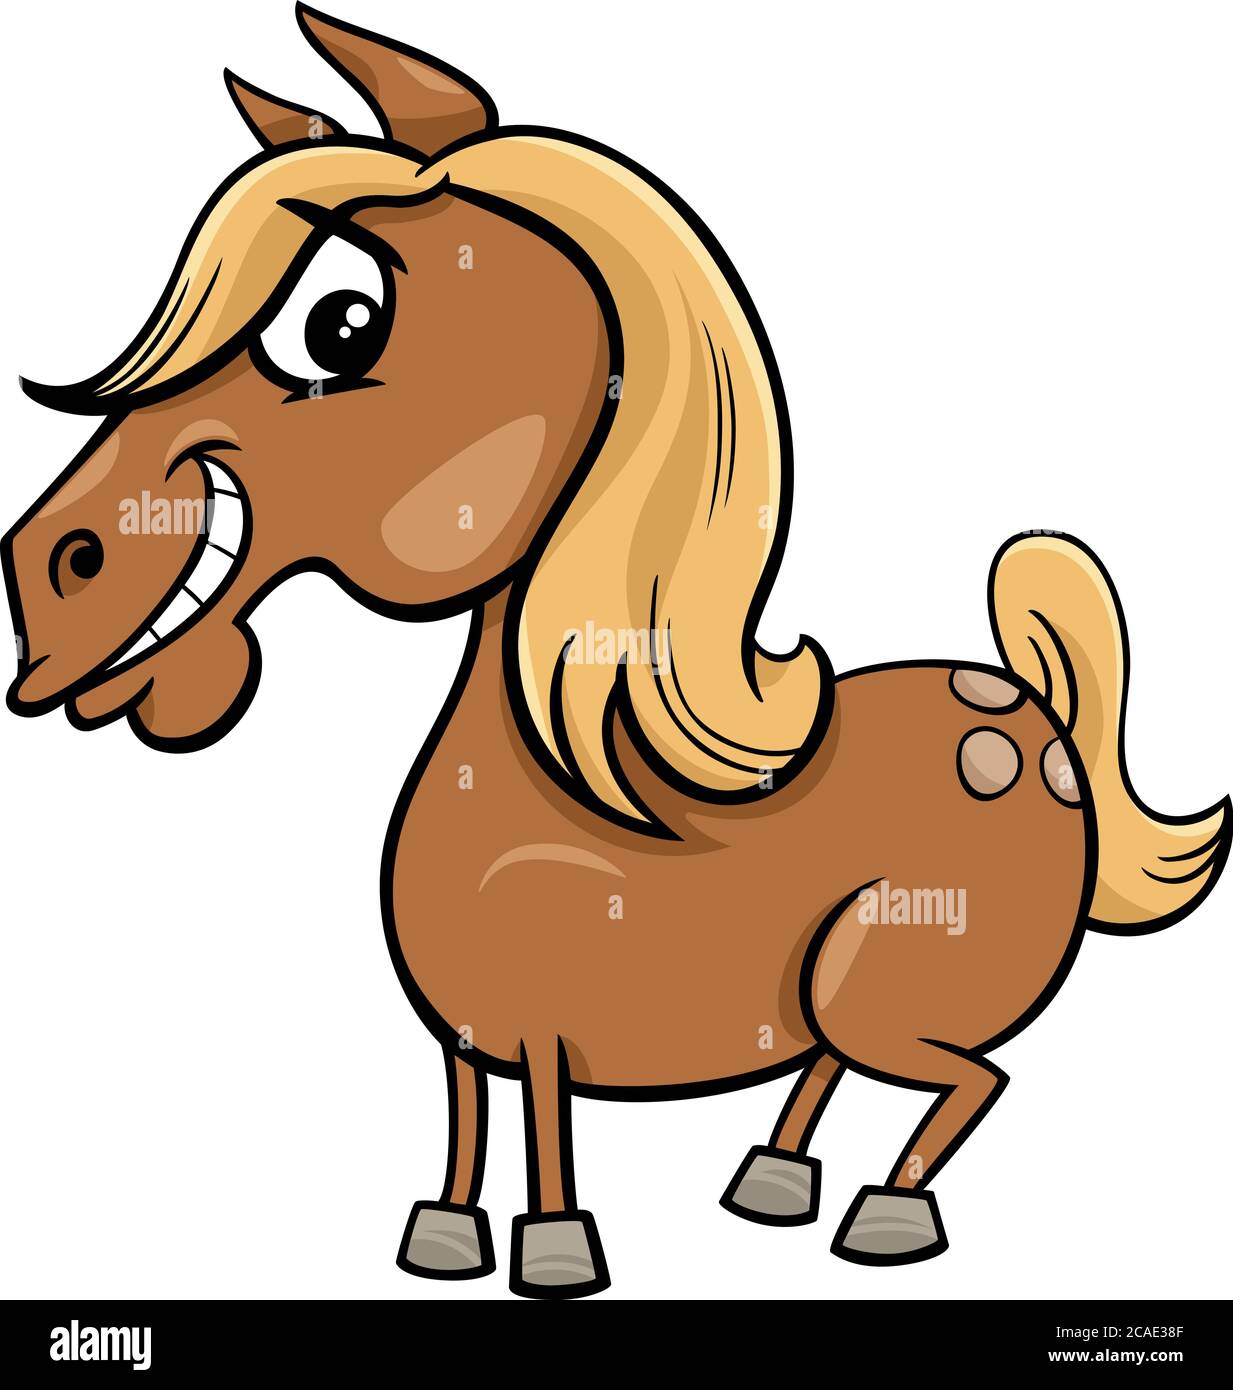 Dessin animé Illustration de drôle de cheval ou de personnage d'animal de ferme de poney Illustration de Vecteur